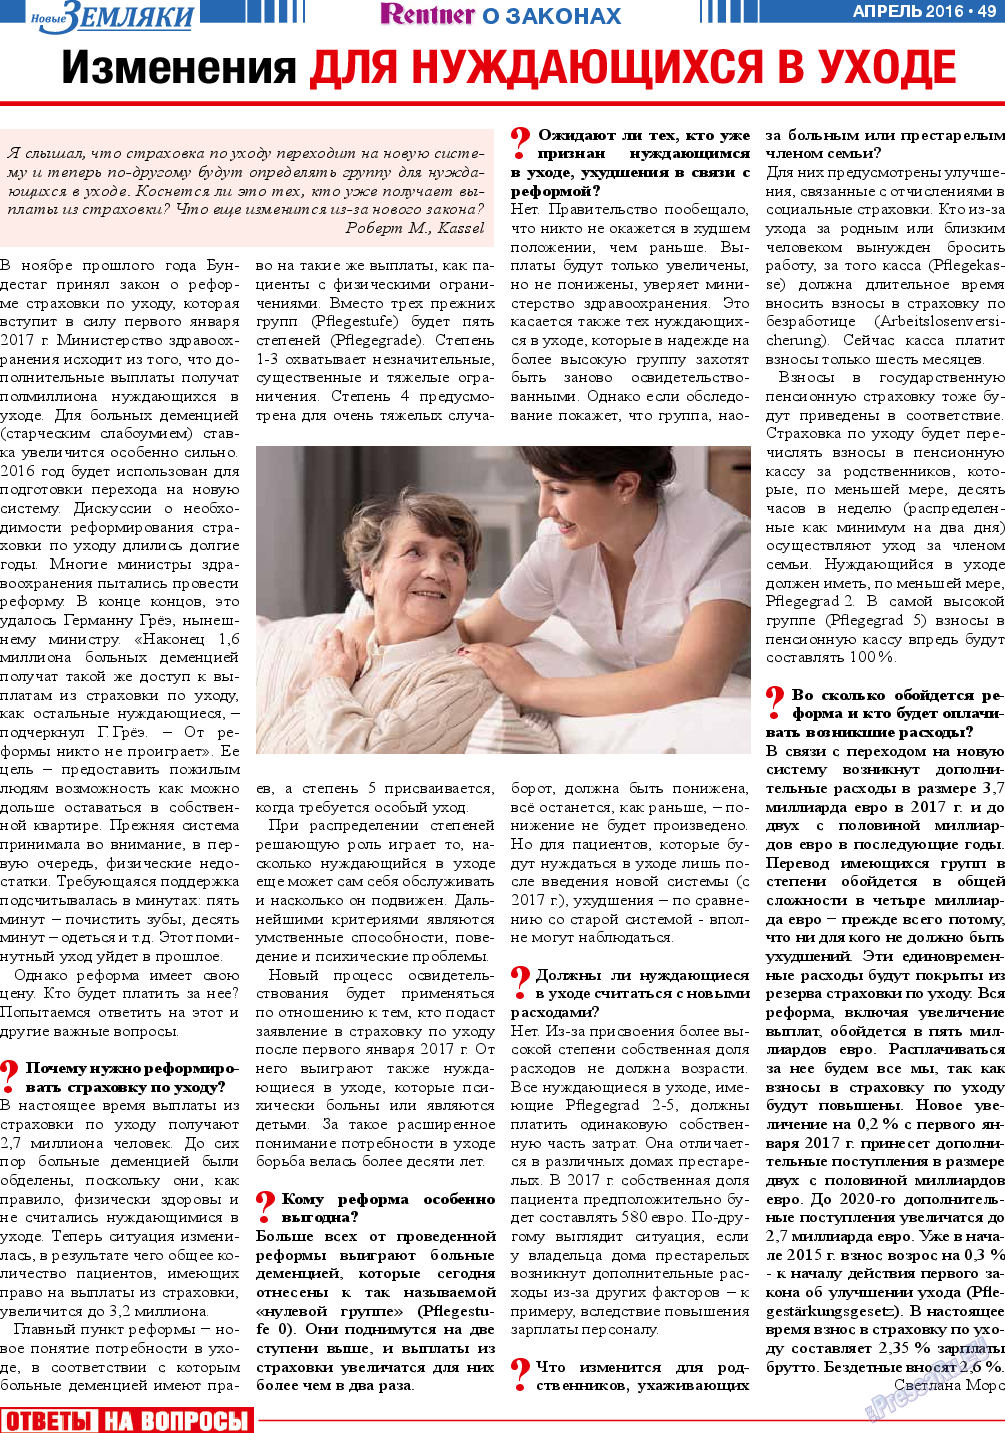 Новые Земляки, газета. 2016 №4 стр.49